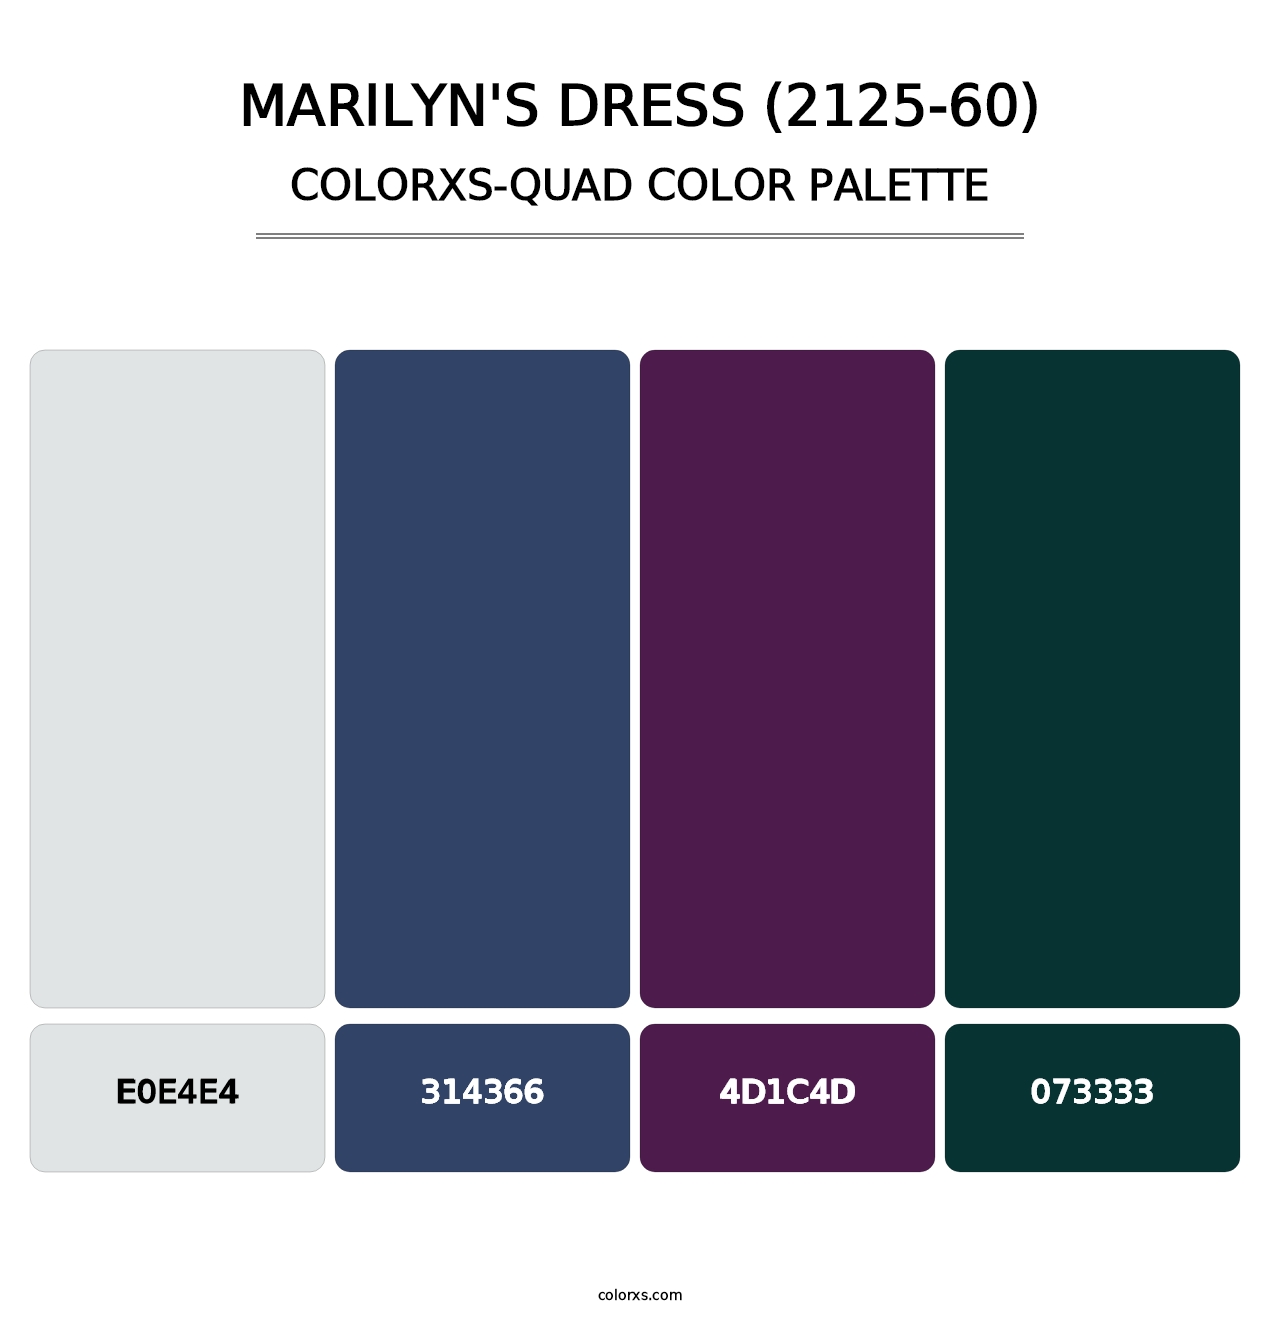 Marilyn's Dress (2125-60) - Colorxs Quad Palette